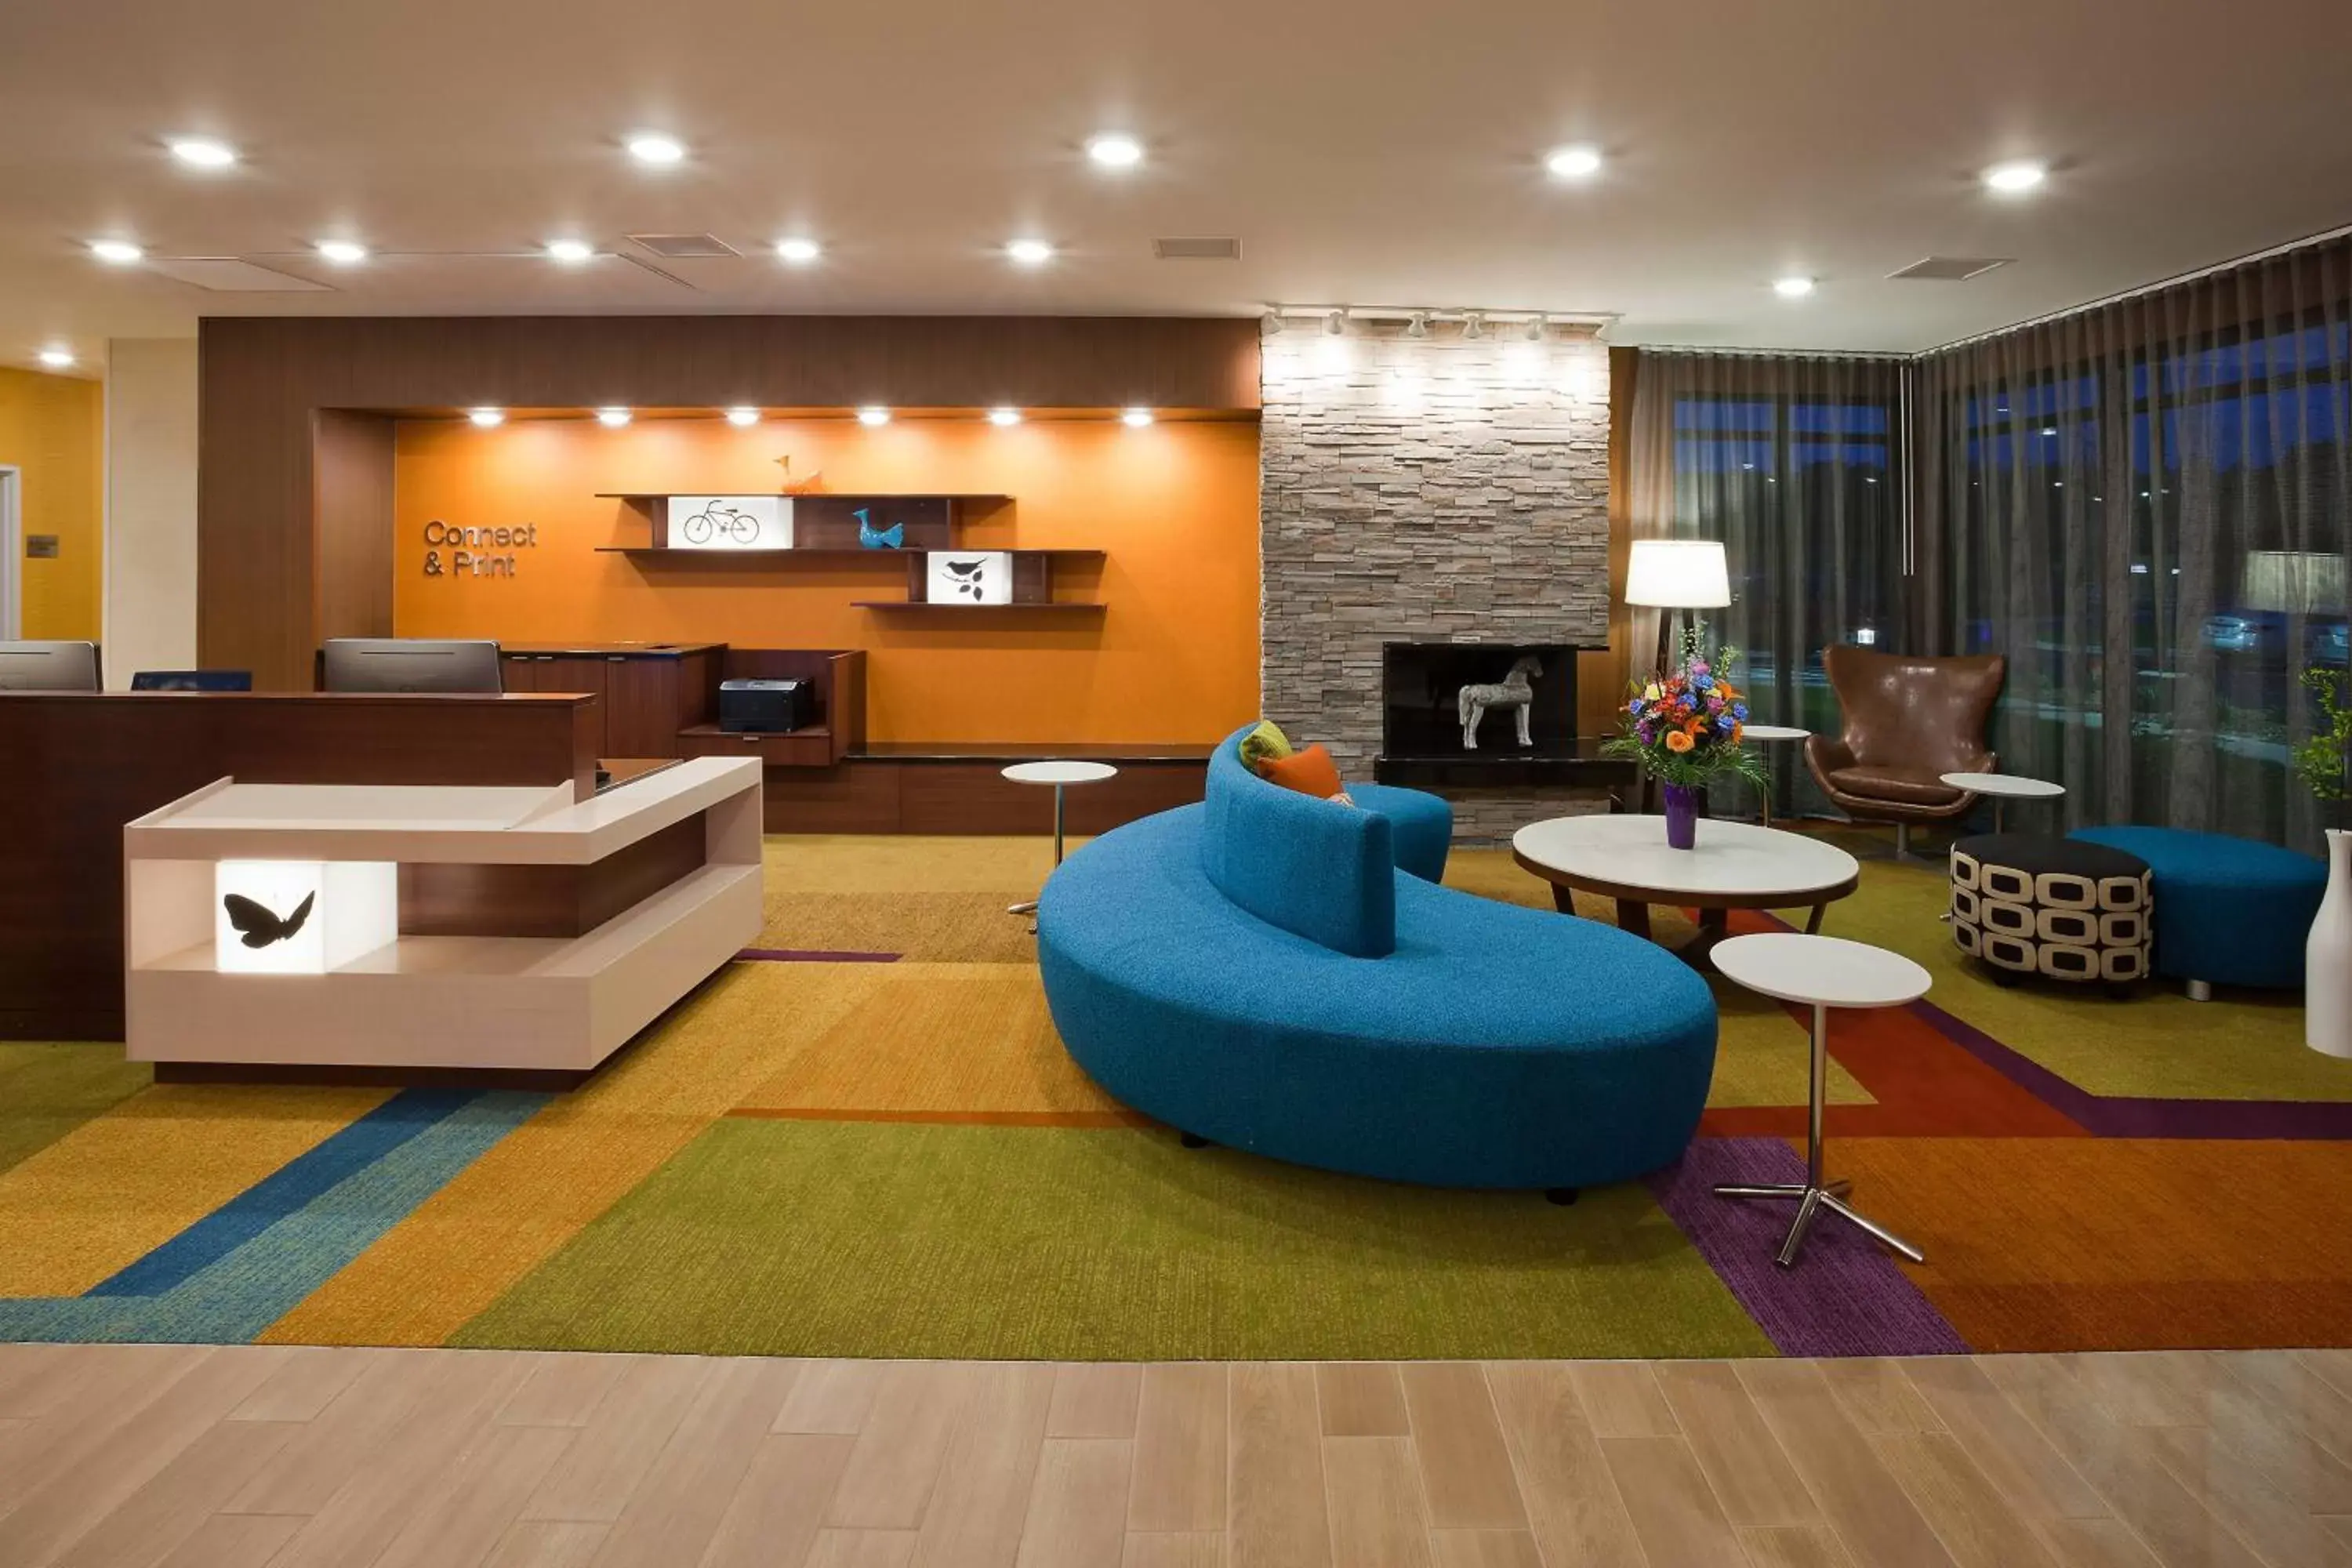 Lobby or reception, Lobby/Reception in Fairfield Inn & Suites by Marriott St. Paul Northeast